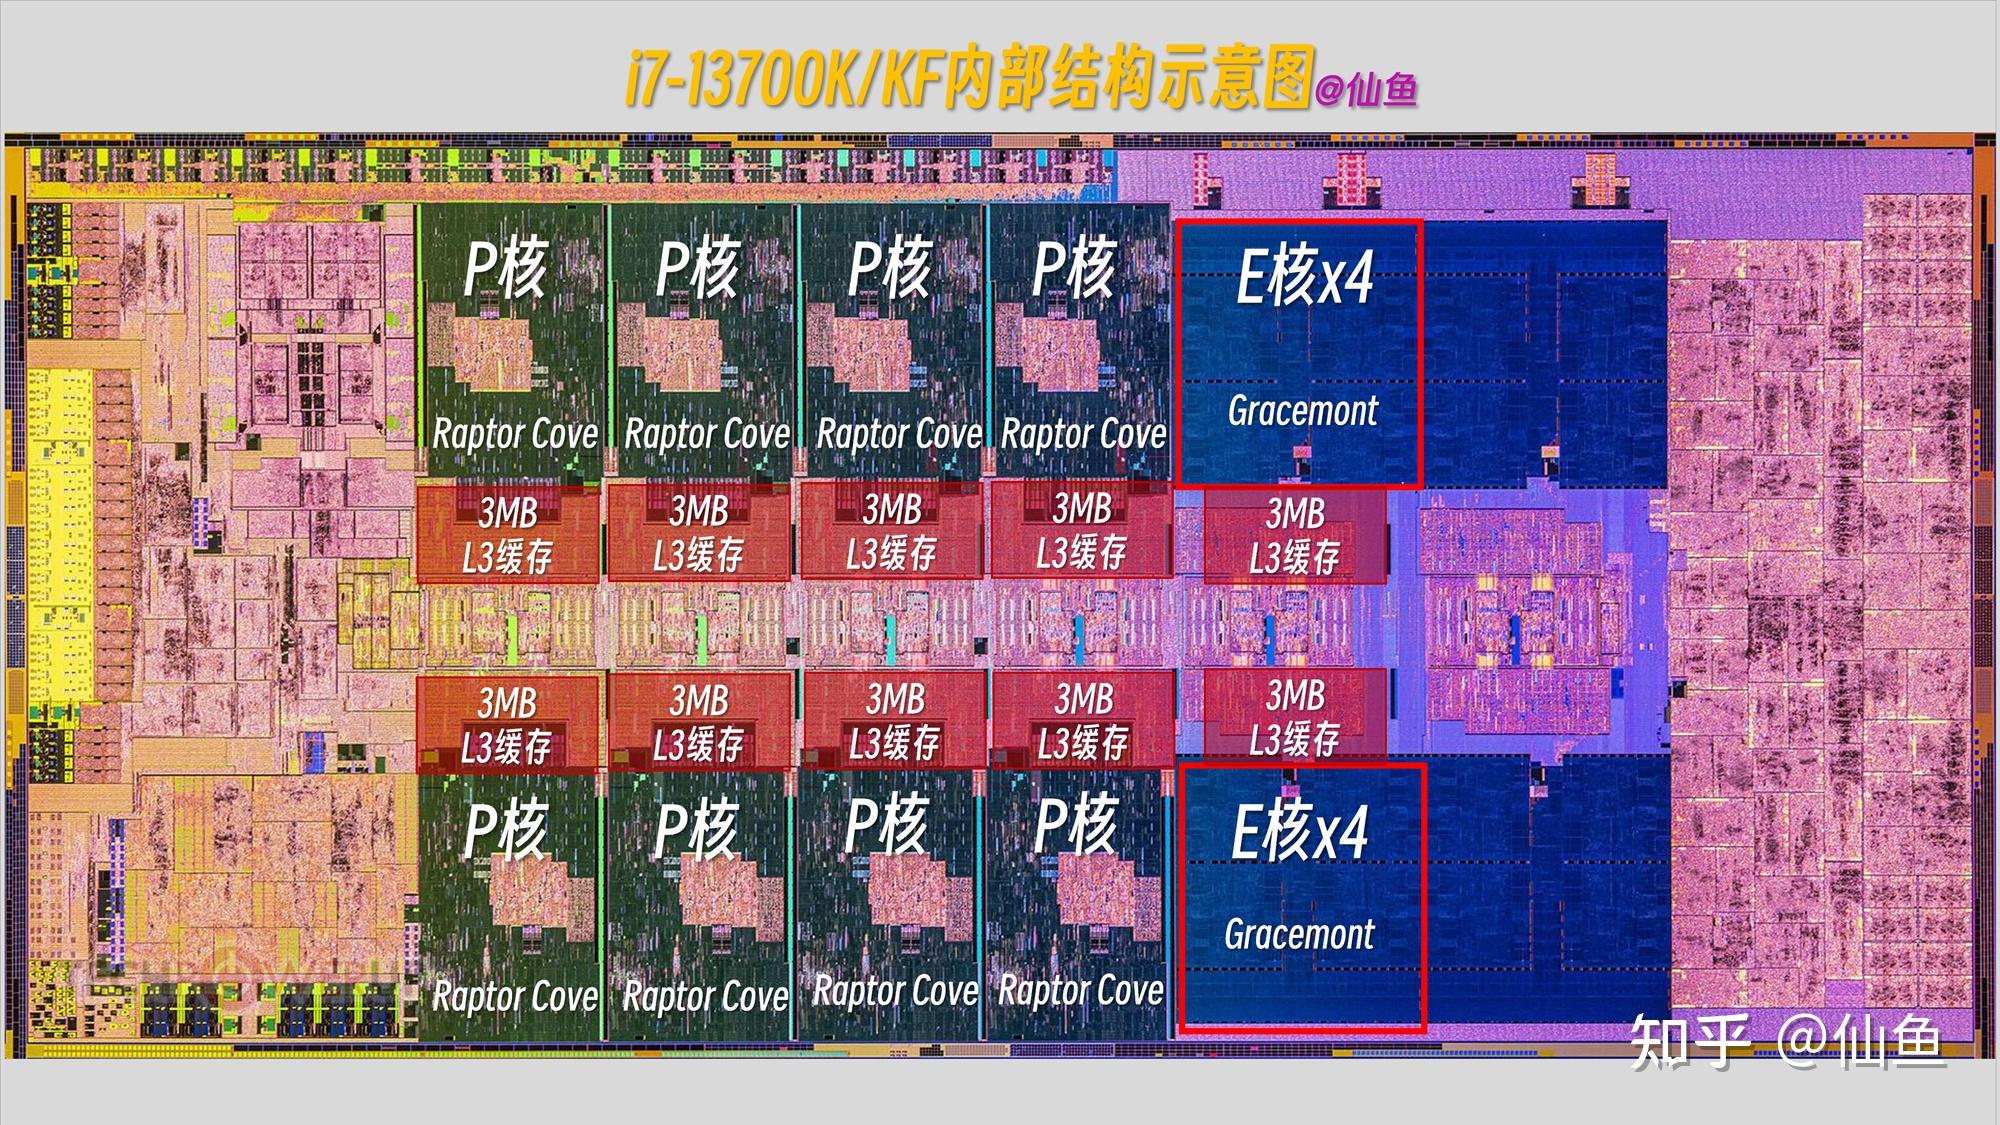 DDR5与DDR4内存技术对比：性能提升与能耗降低的全面分析  第1张